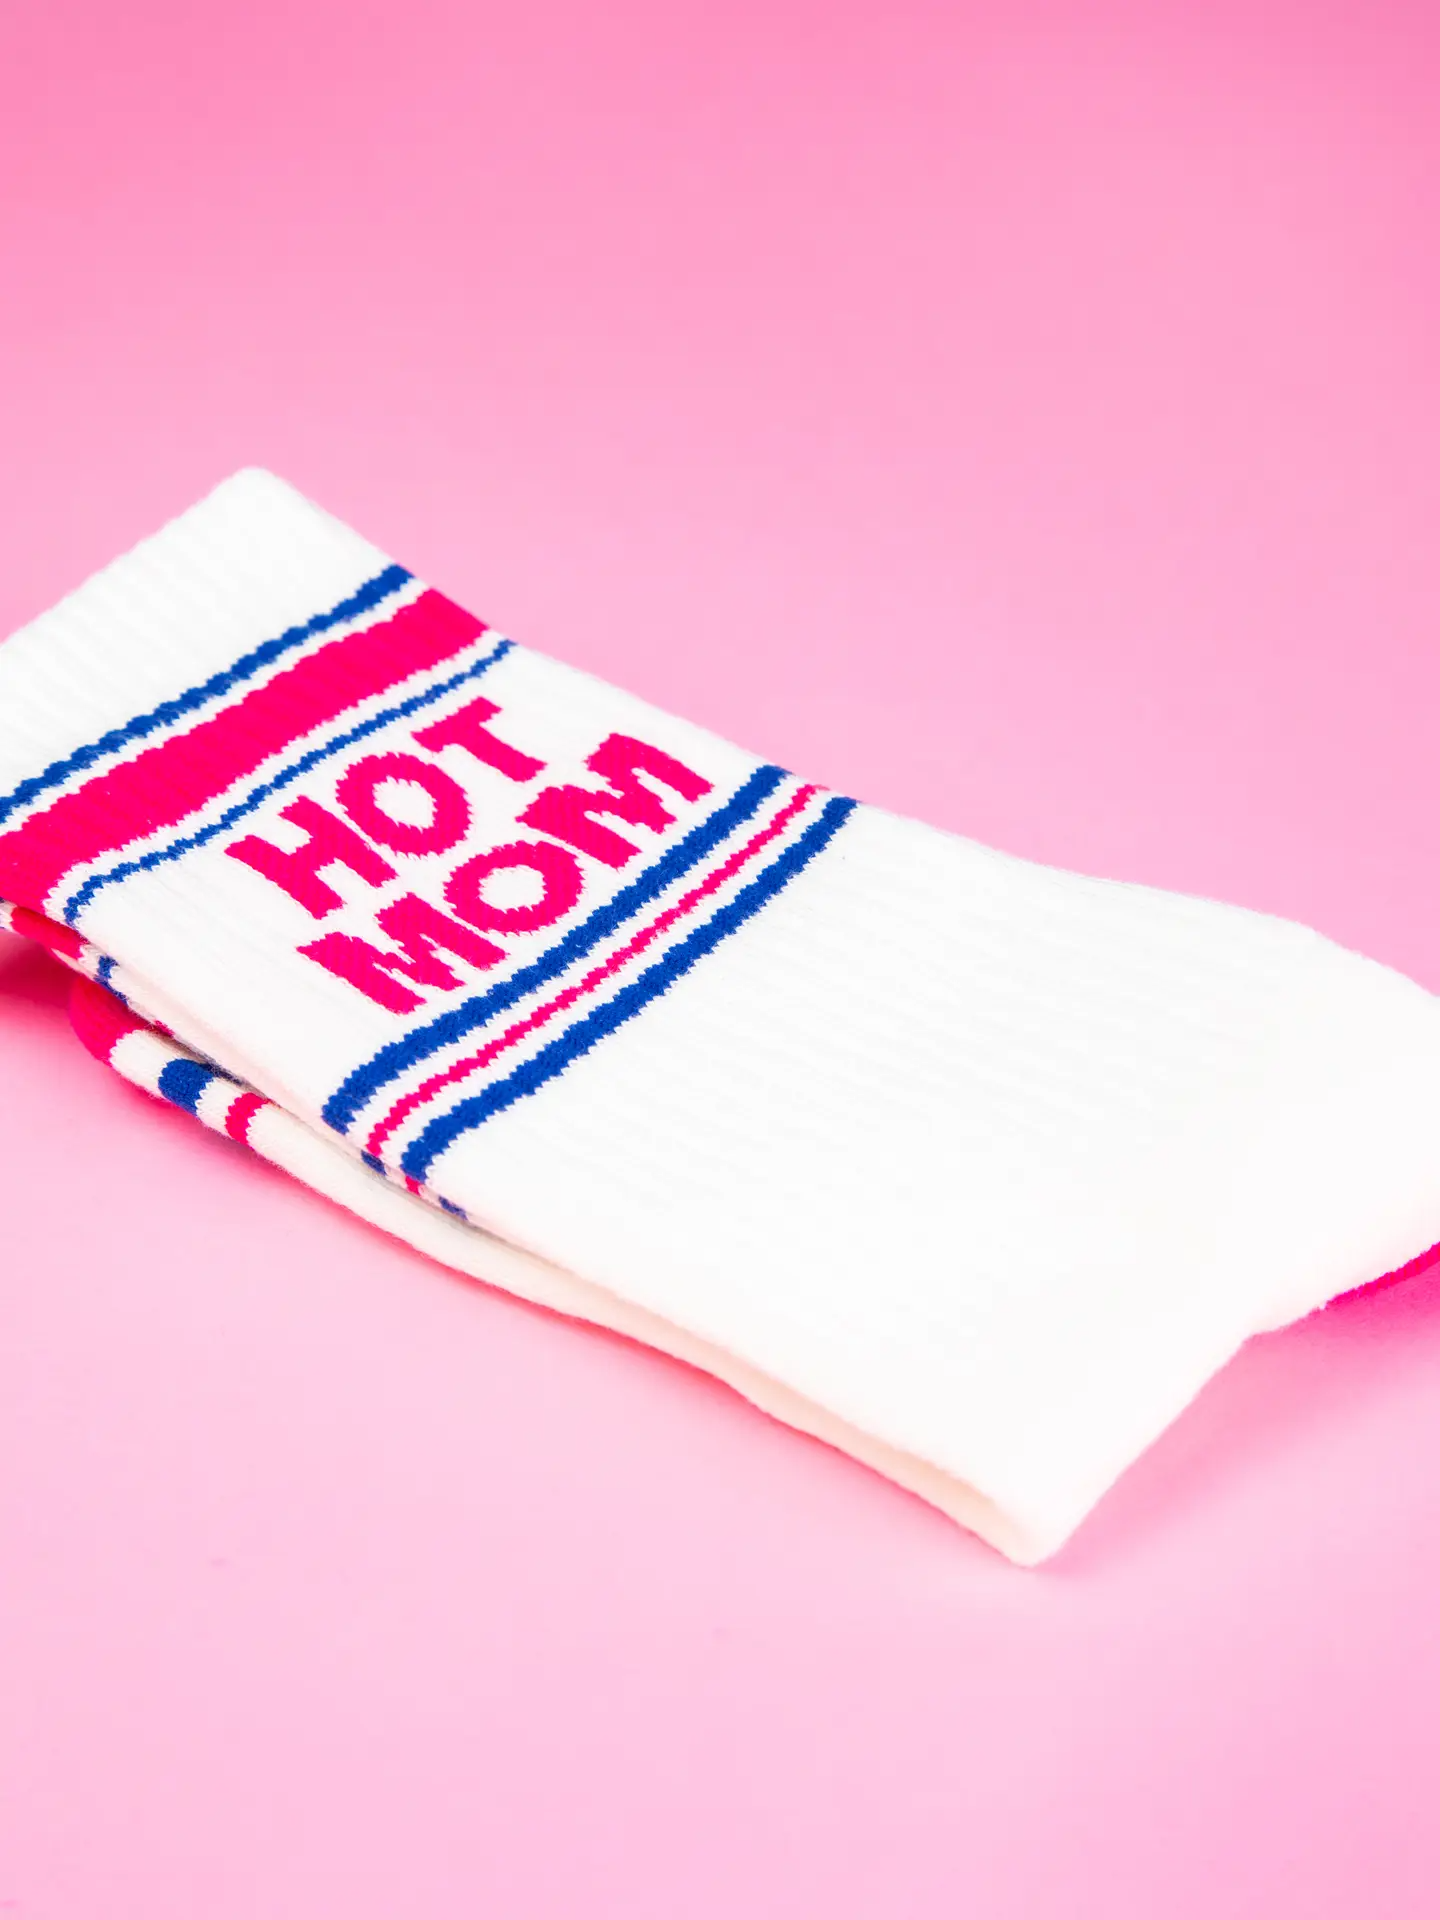 Hot Mom - Unisex Socks